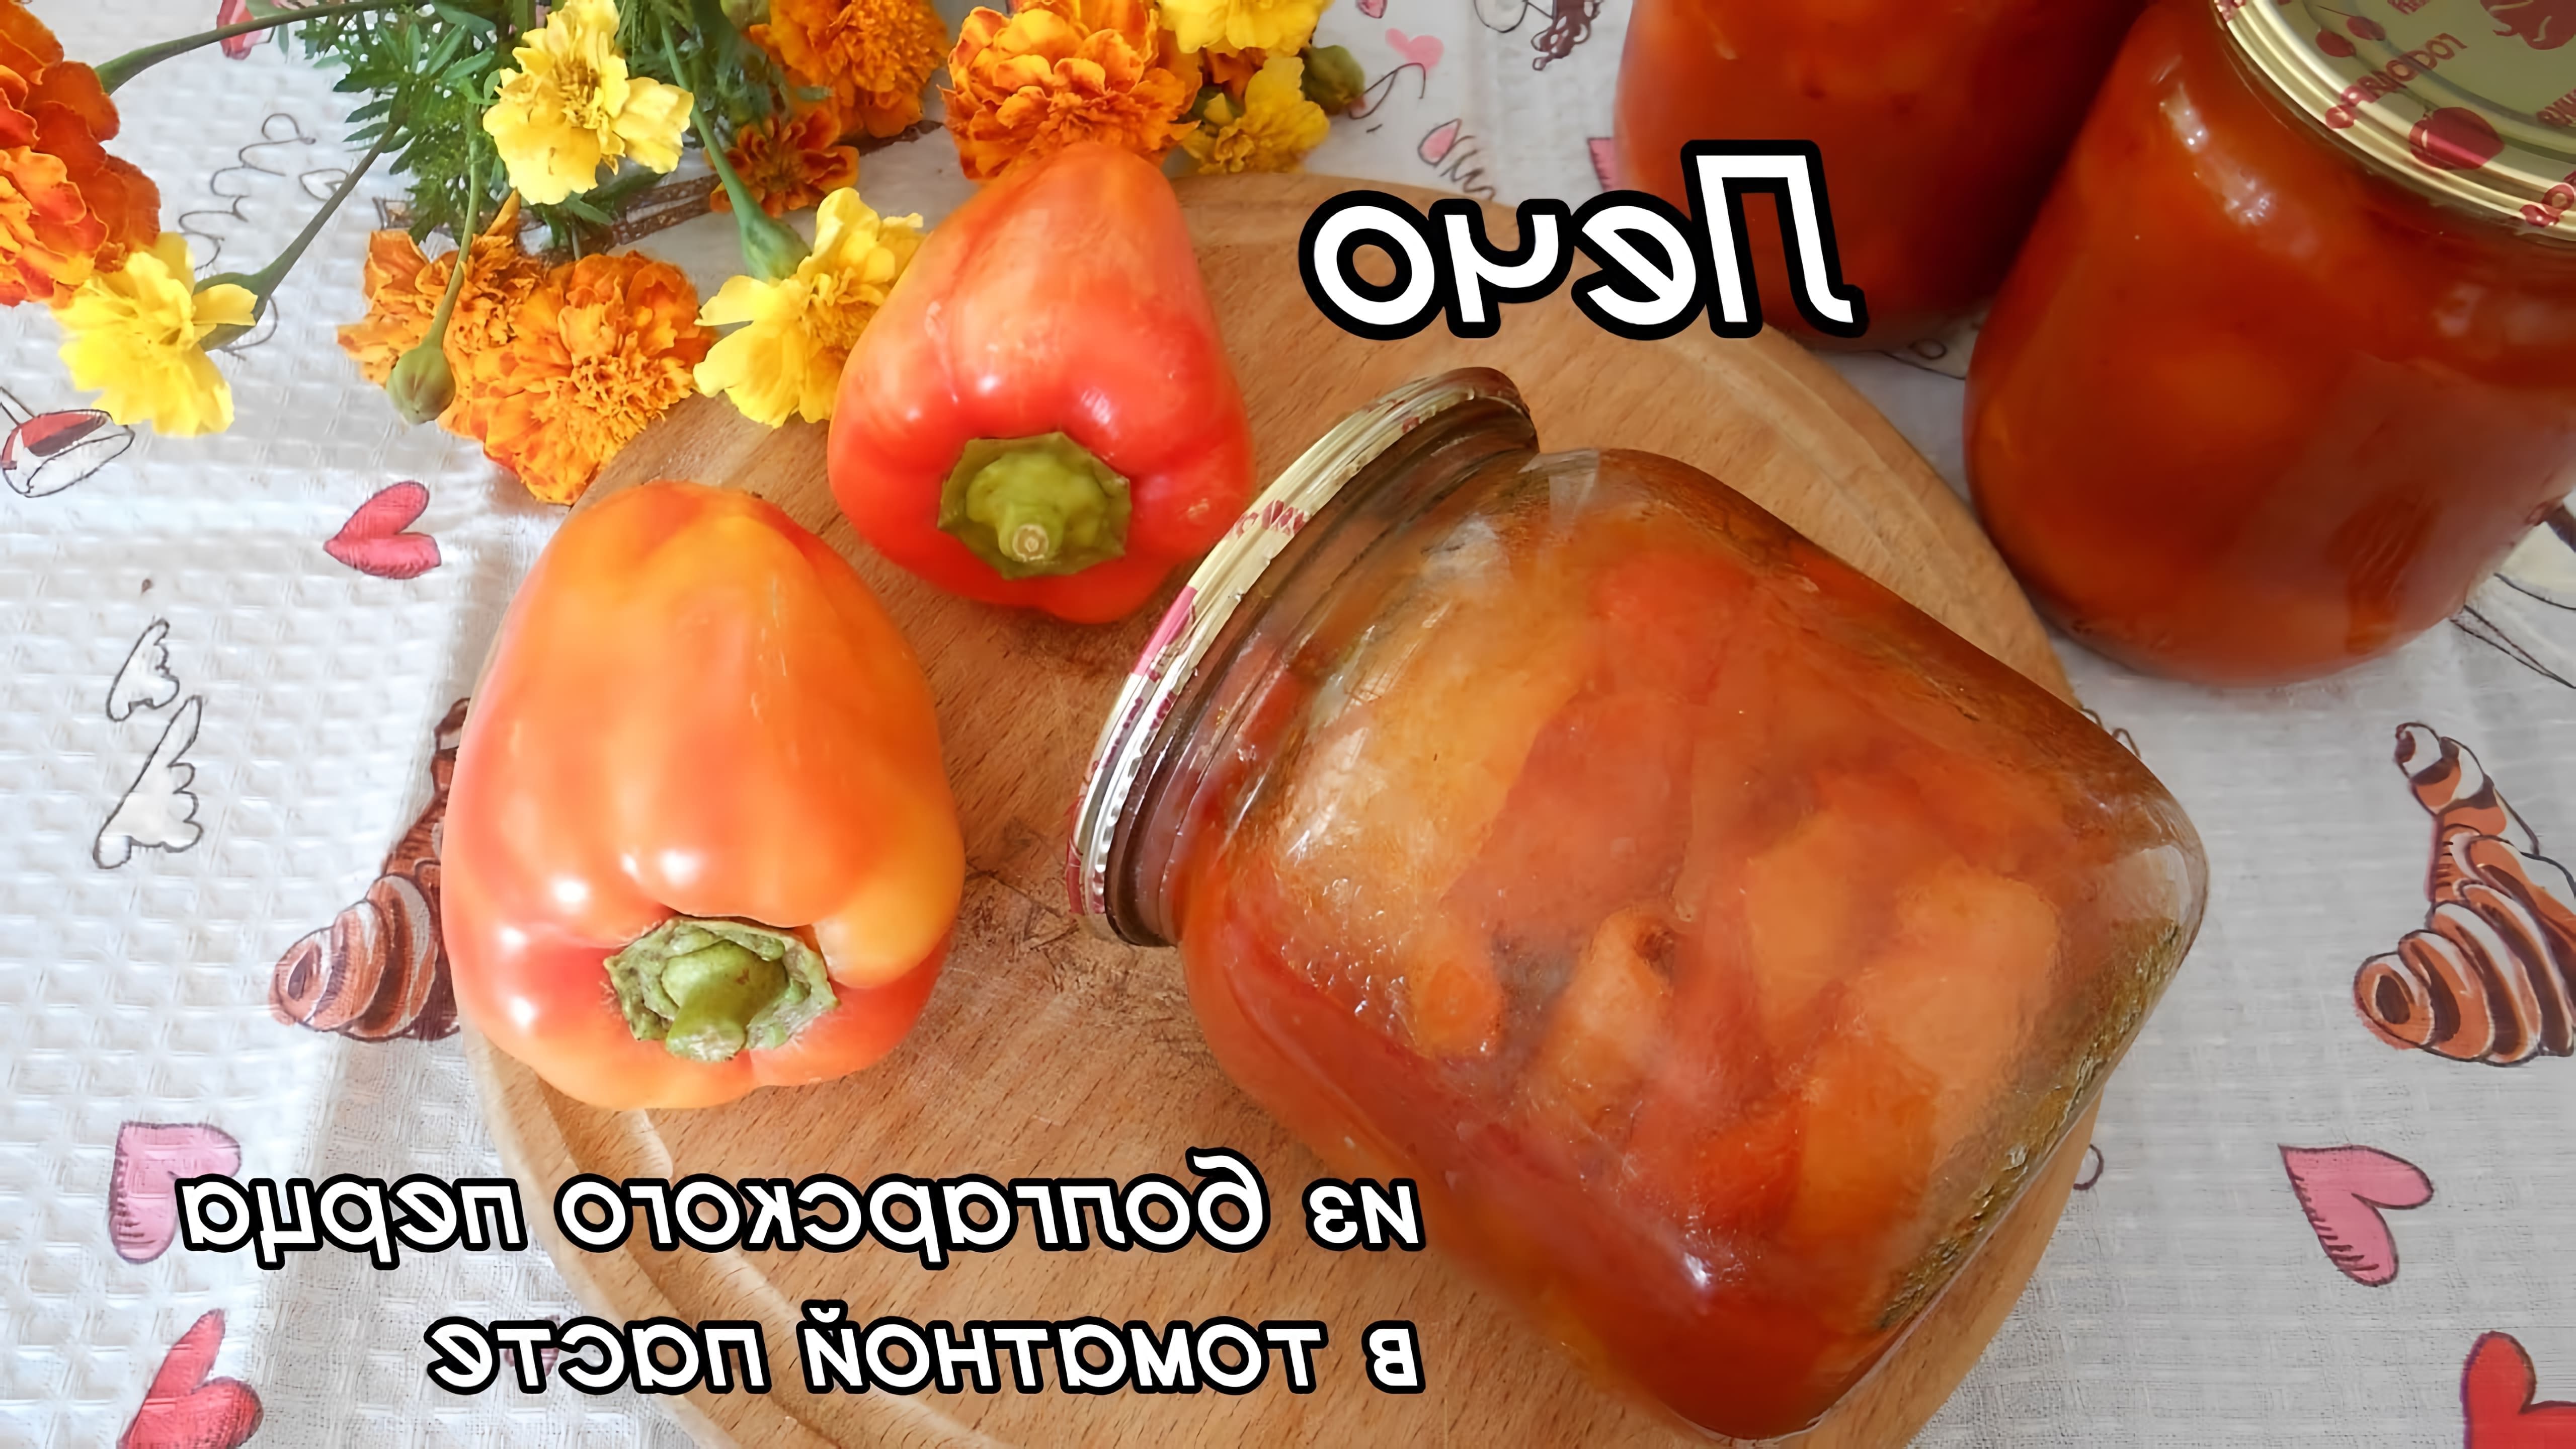 В этом видео демонстрируется процесс приготовления лечо из болгарского перца в томатной пасте